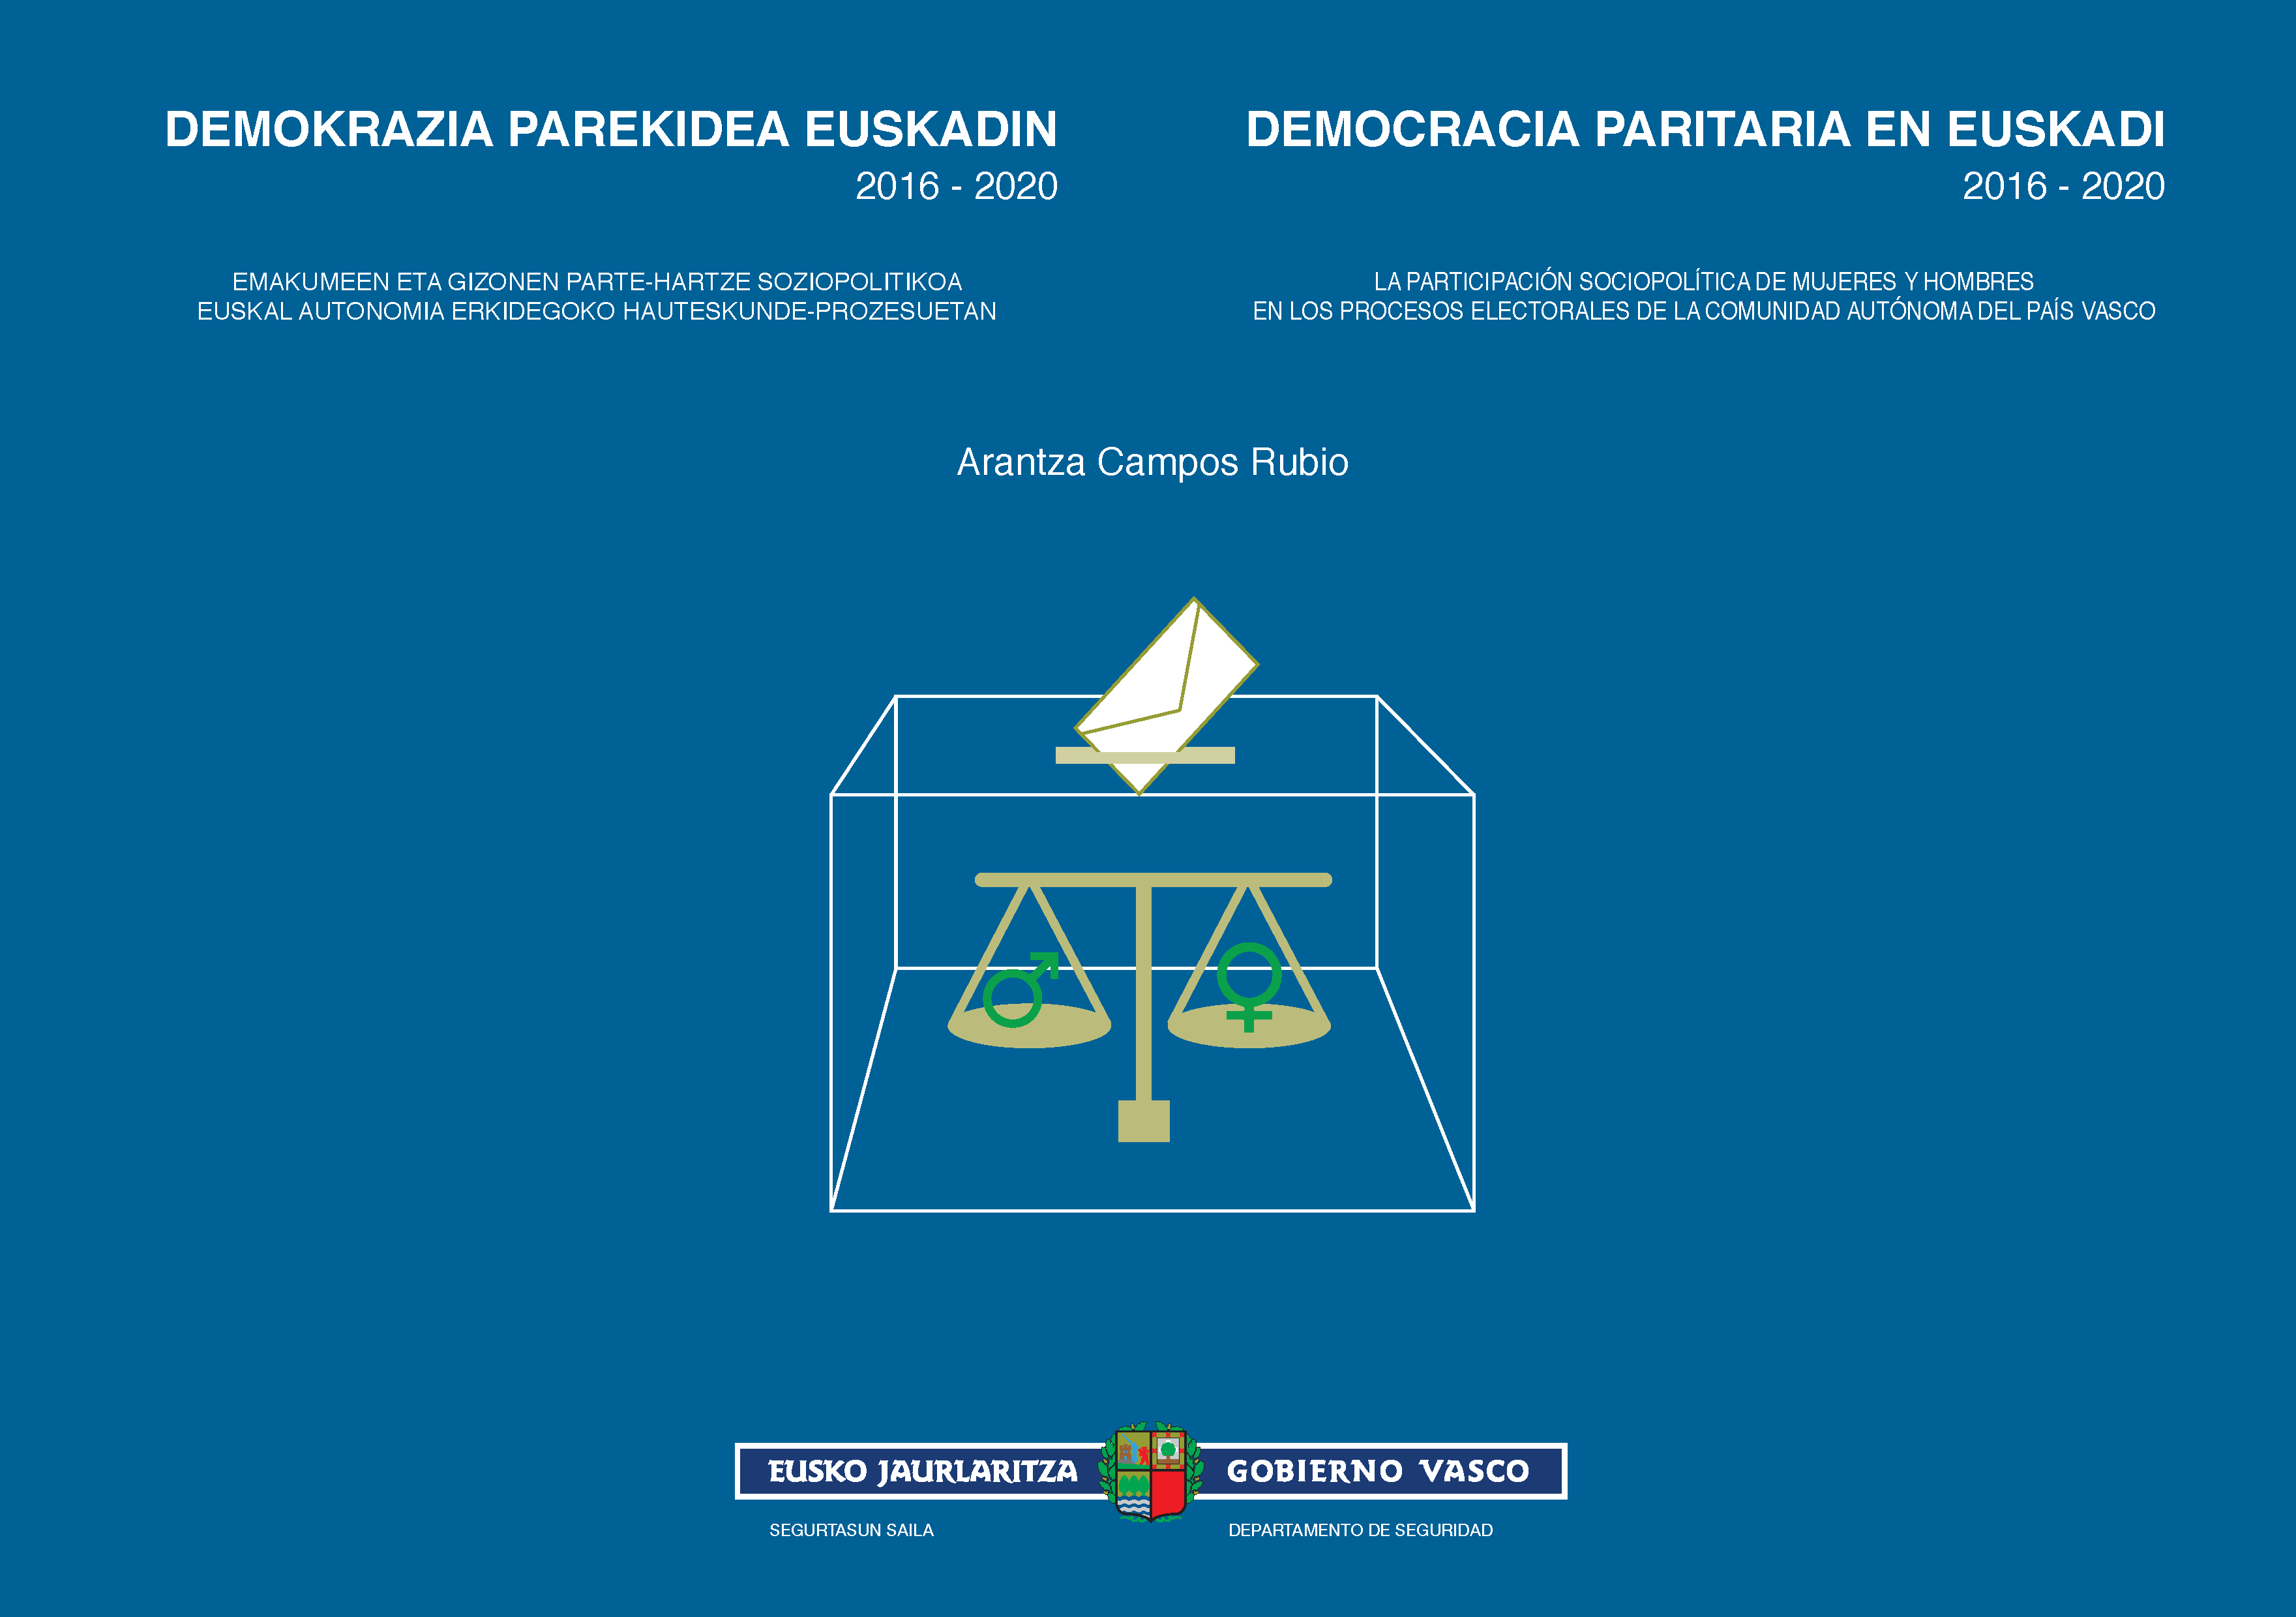 Demokrazia paritarioa Euskadin 2016-2020